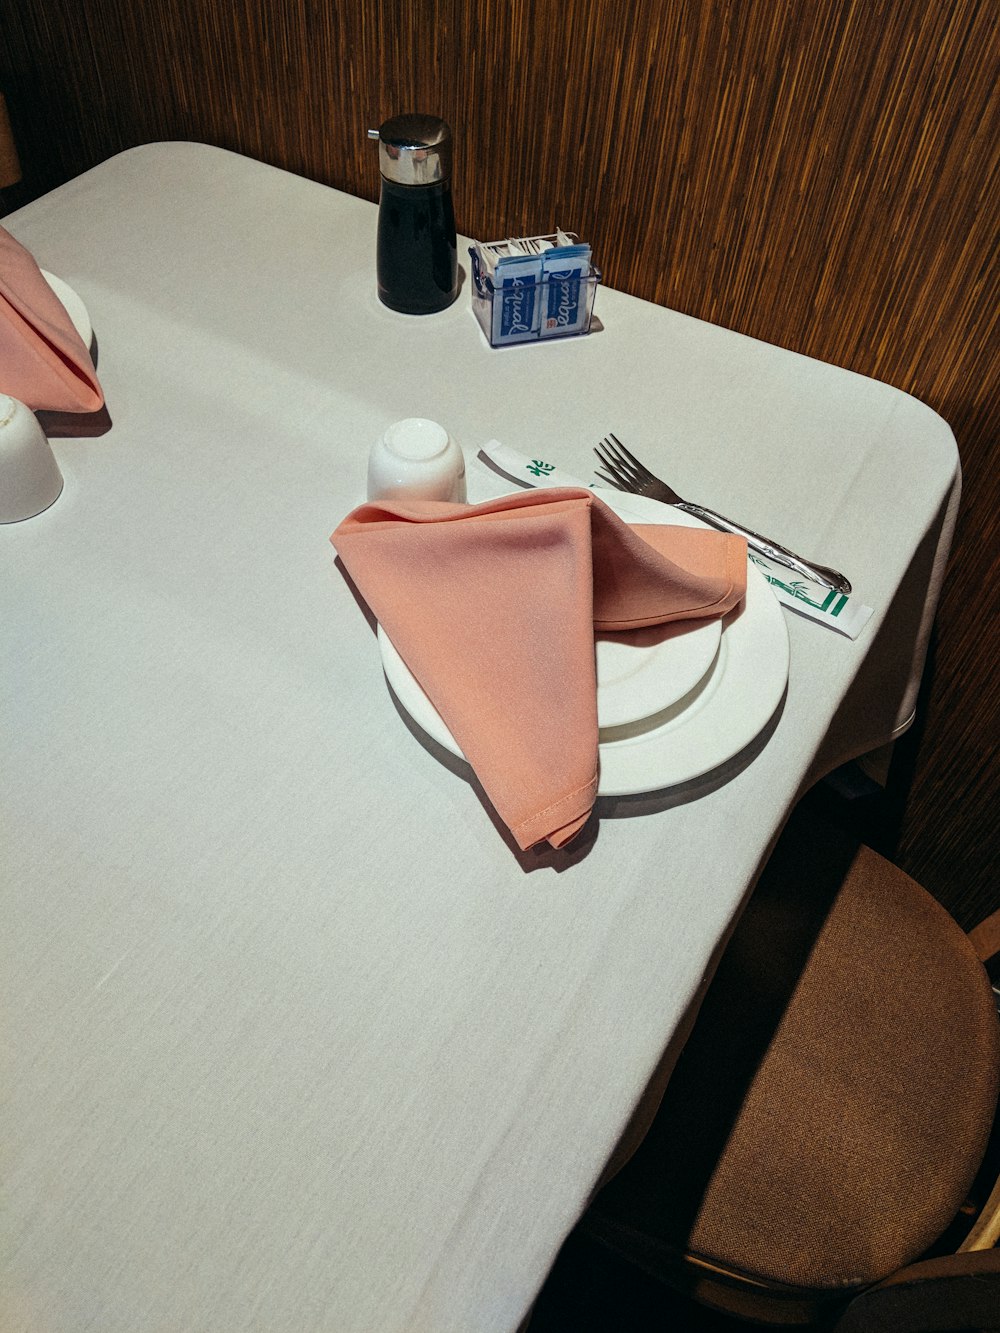 orange table napkin on plate